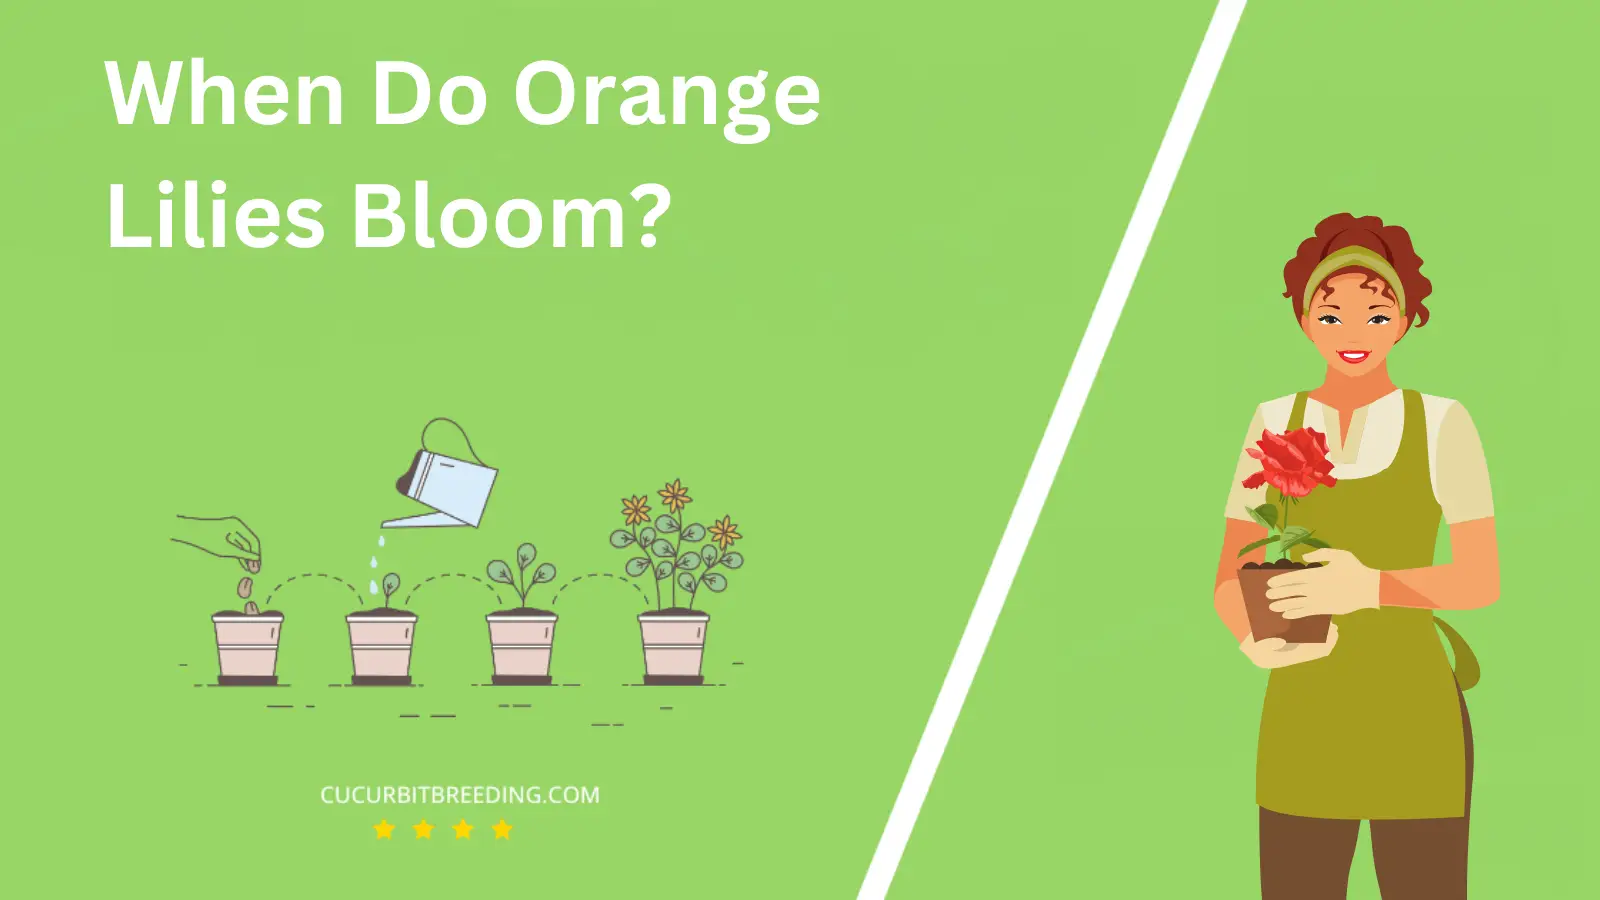 When Do Orange Lilies Bloom?